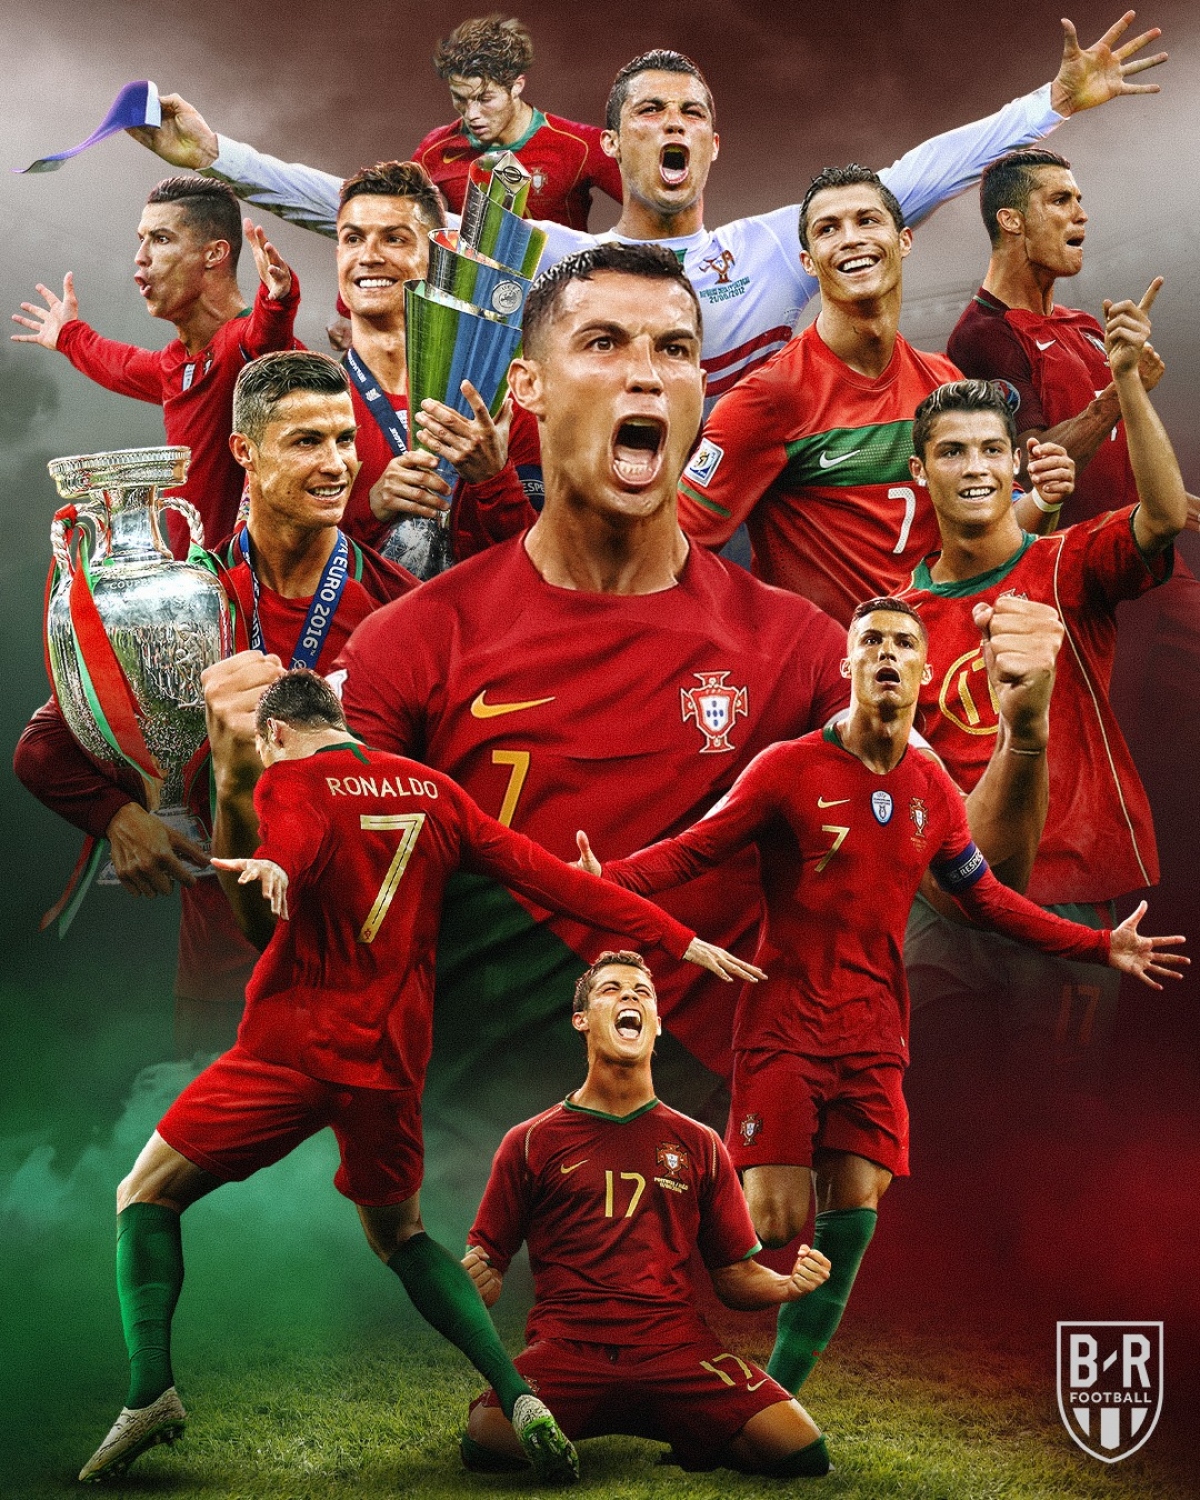 Hình Nền Ronaldo Siêu Cầu Thủ Bóng Đá Đẹp Trai, Khí Chất | Ronaldo, Bóng  đá, Cristiano ronaldo